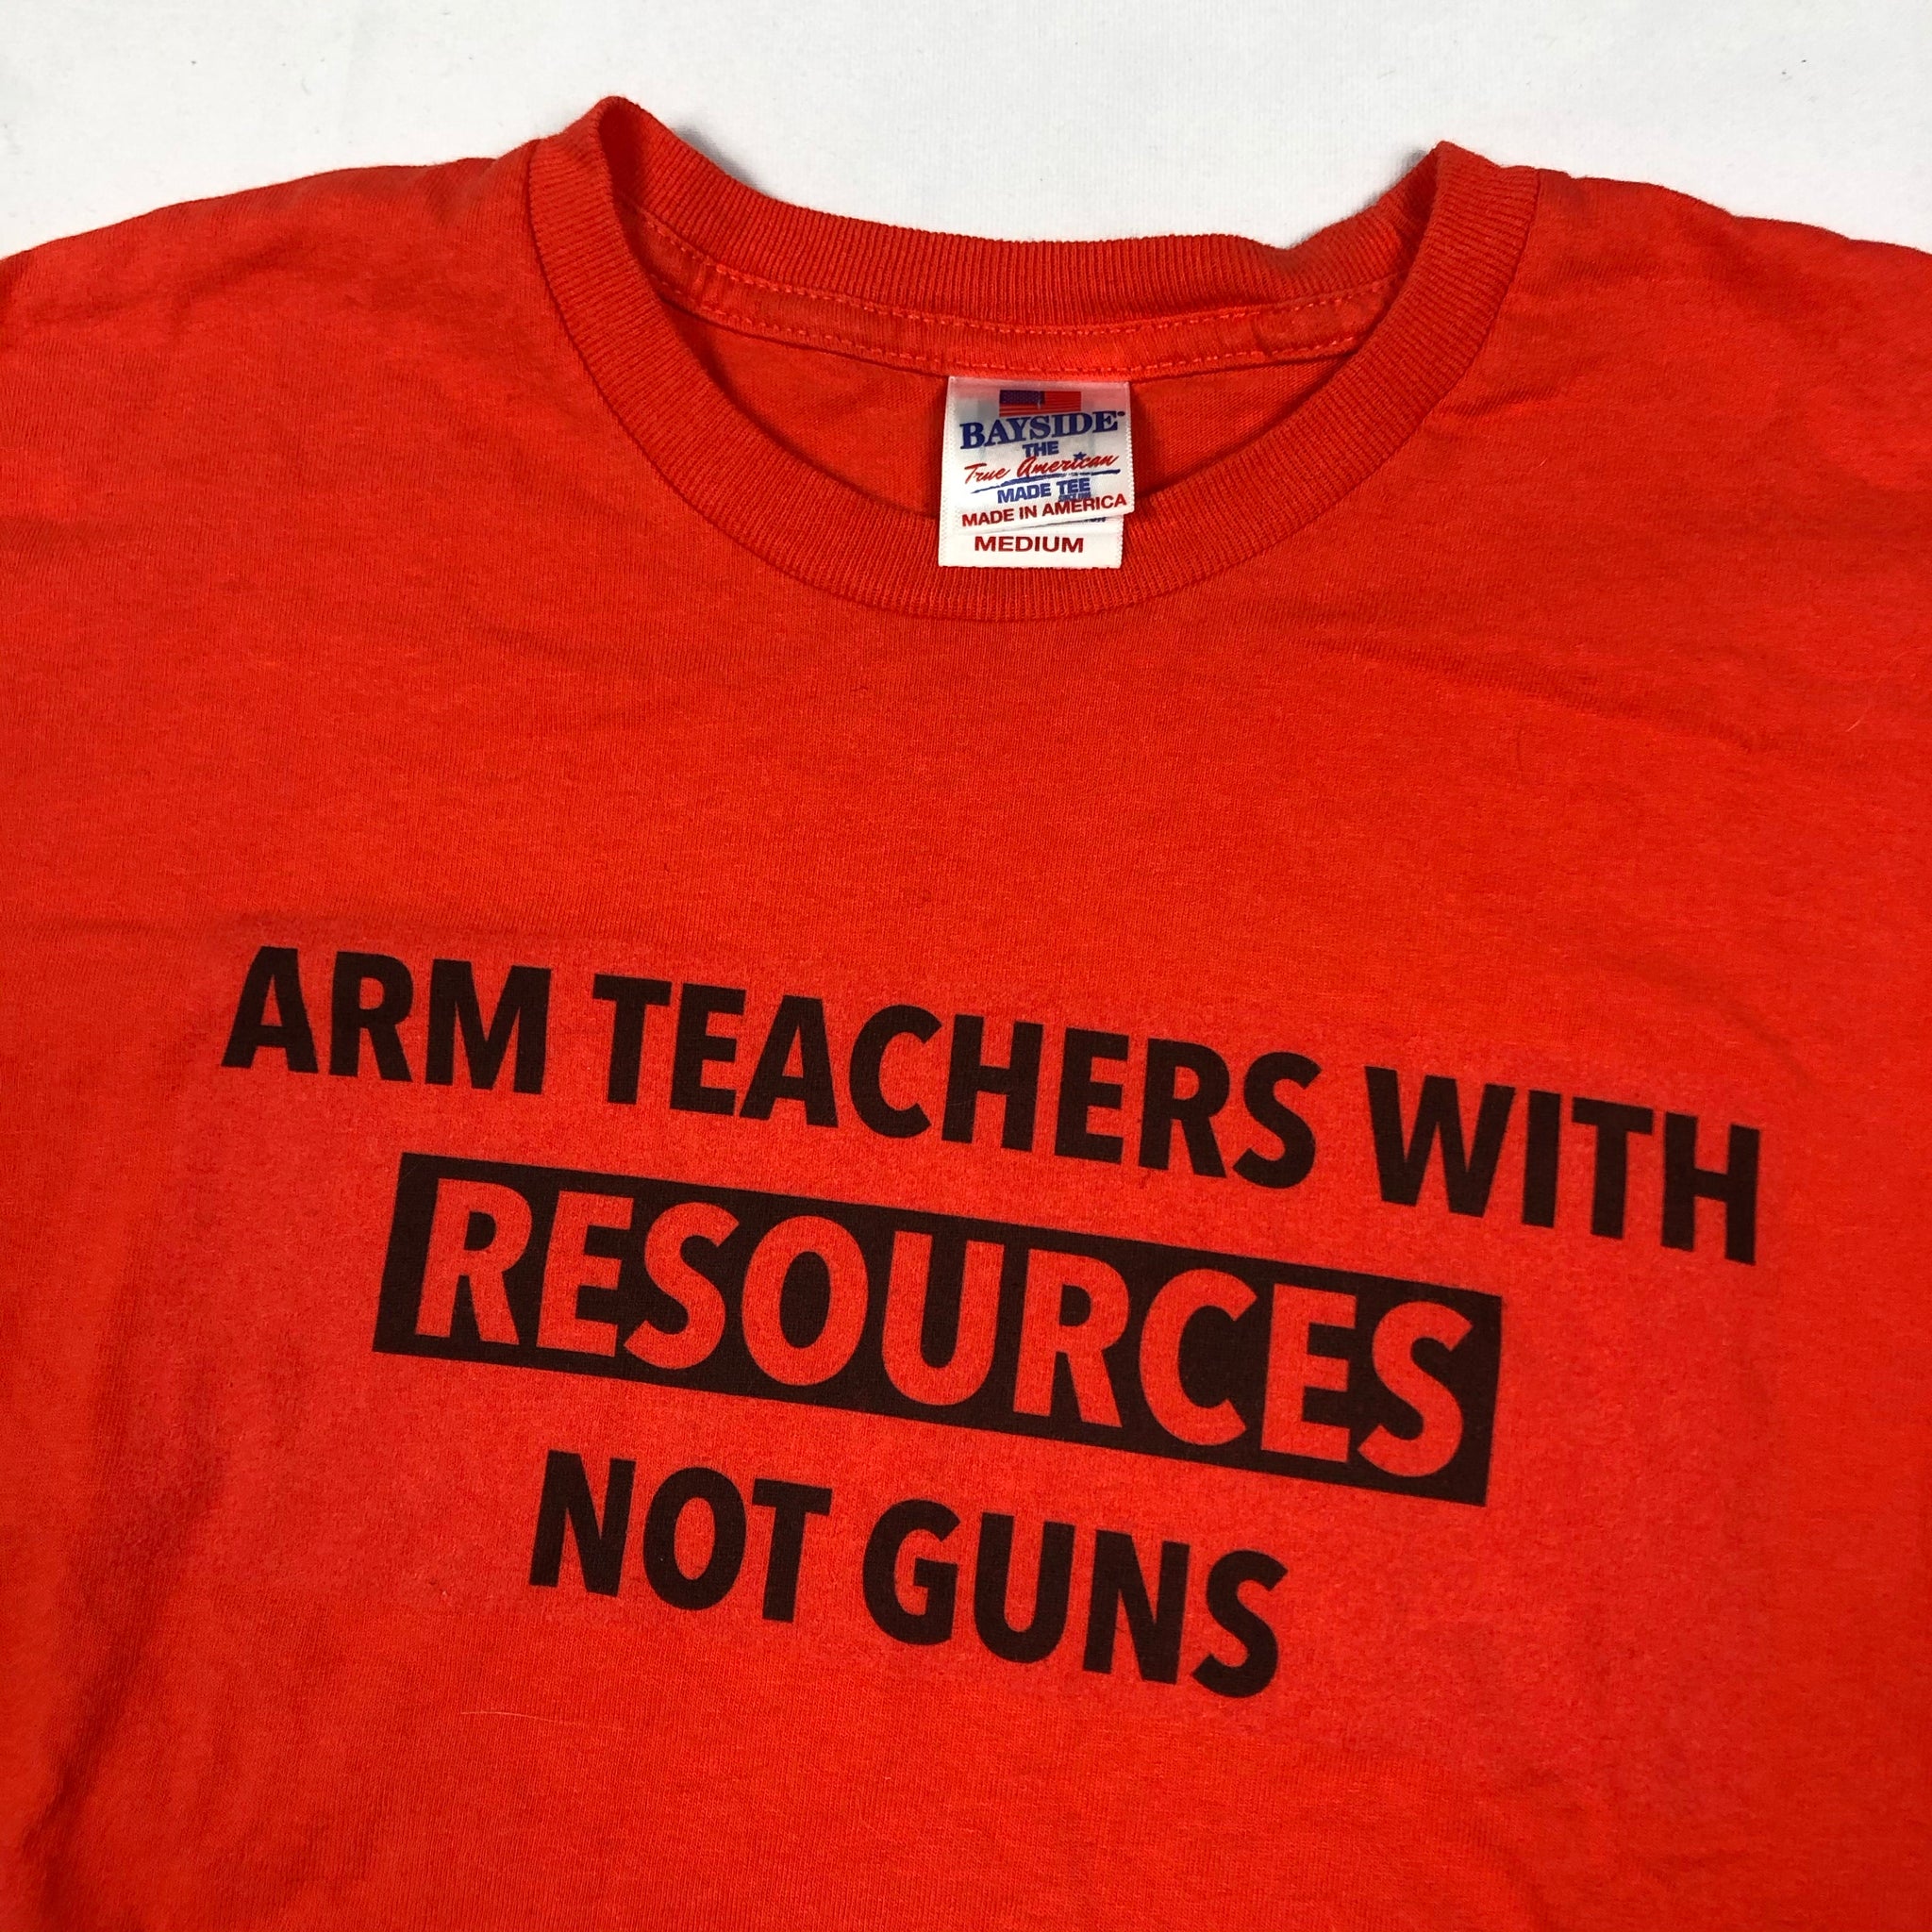 “Arm Teachers With Resources Not Guns” shirt